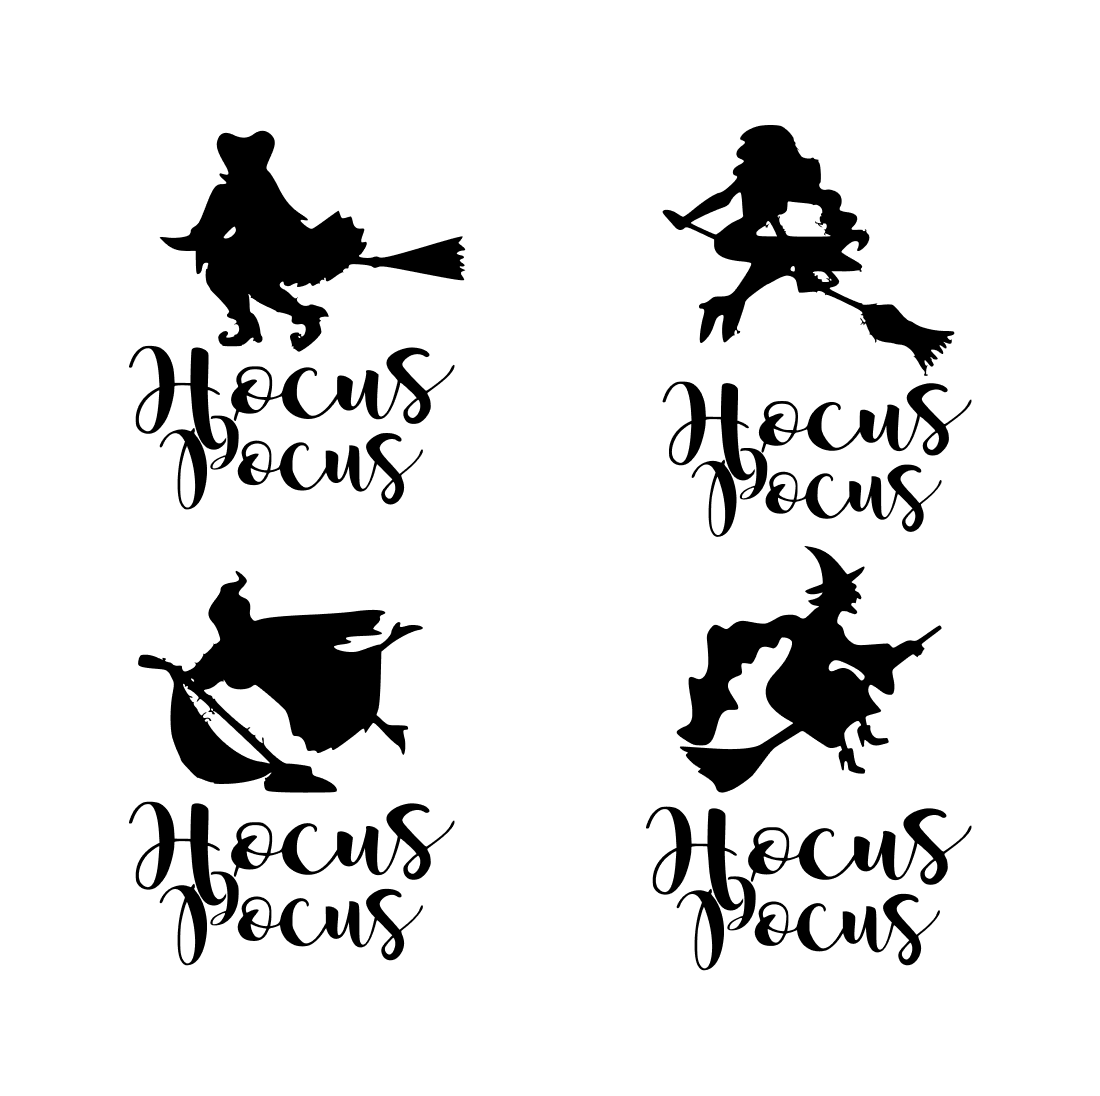 Hocus Pocus Witches SVG.